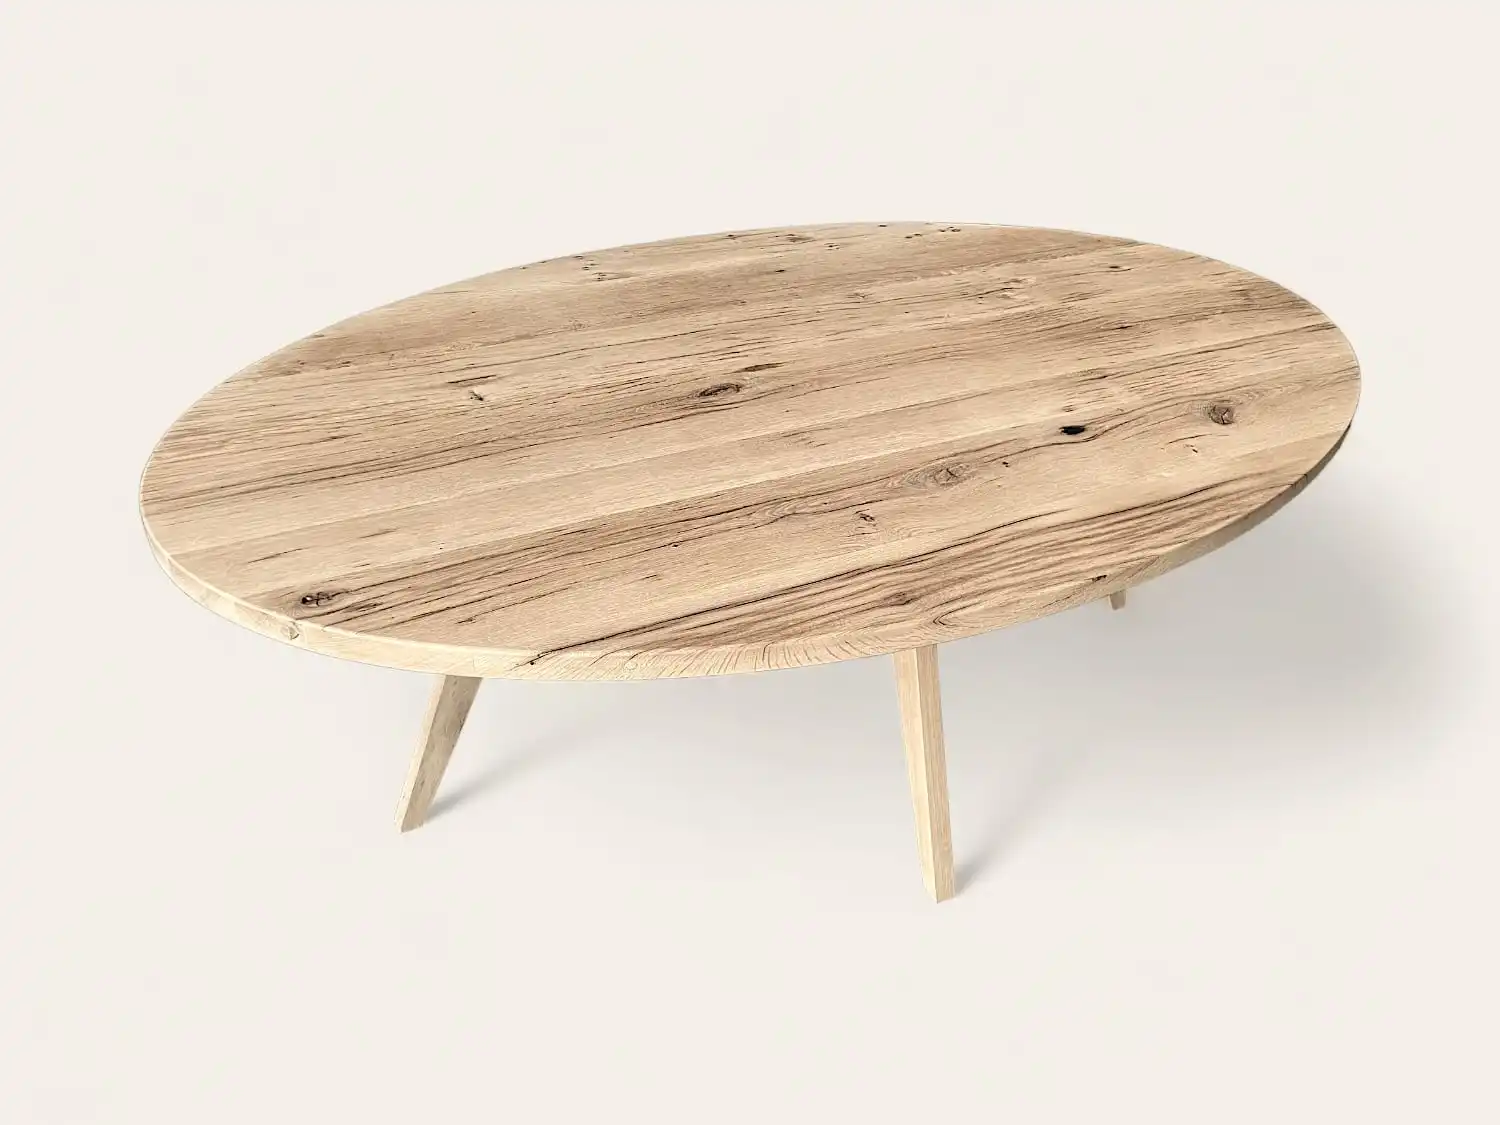 Une table en bois rustique avec un plateau et des pieds en bois.